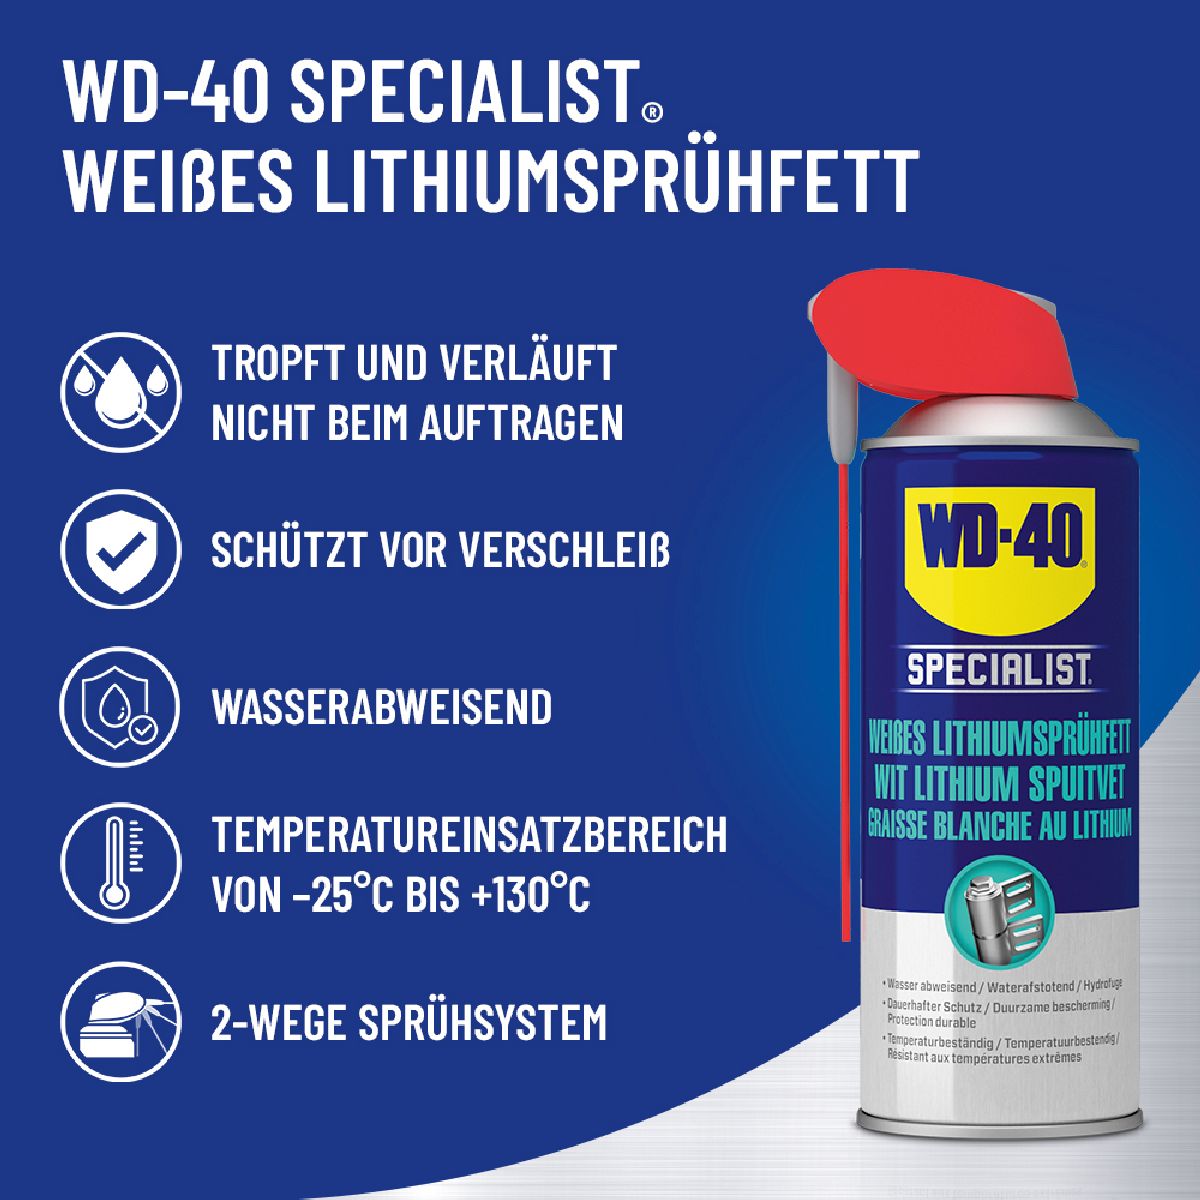 WD-40 Specialist Graisse spray au lithium blanc 400ml